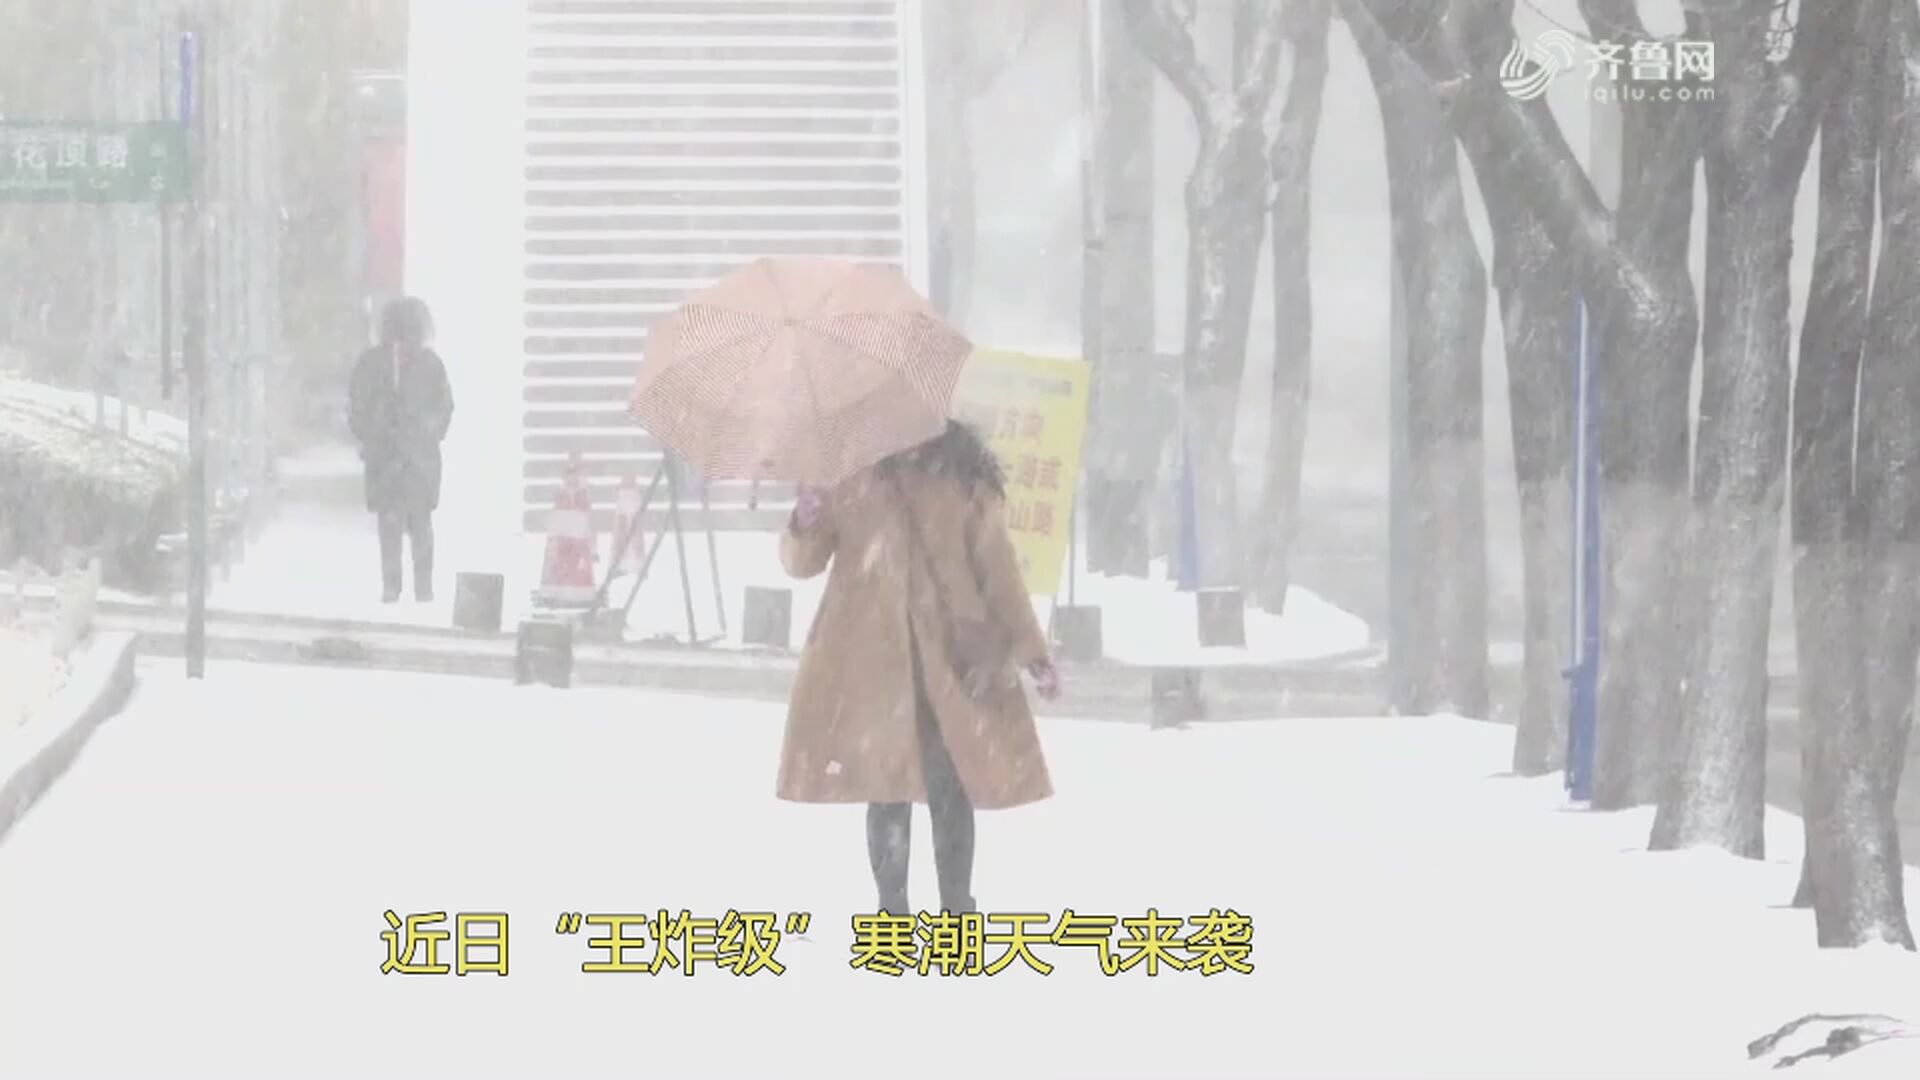 改01 【寒潮来袭】零下20多度是常态 看黑龙江人有哪些过冬秘籍VA0